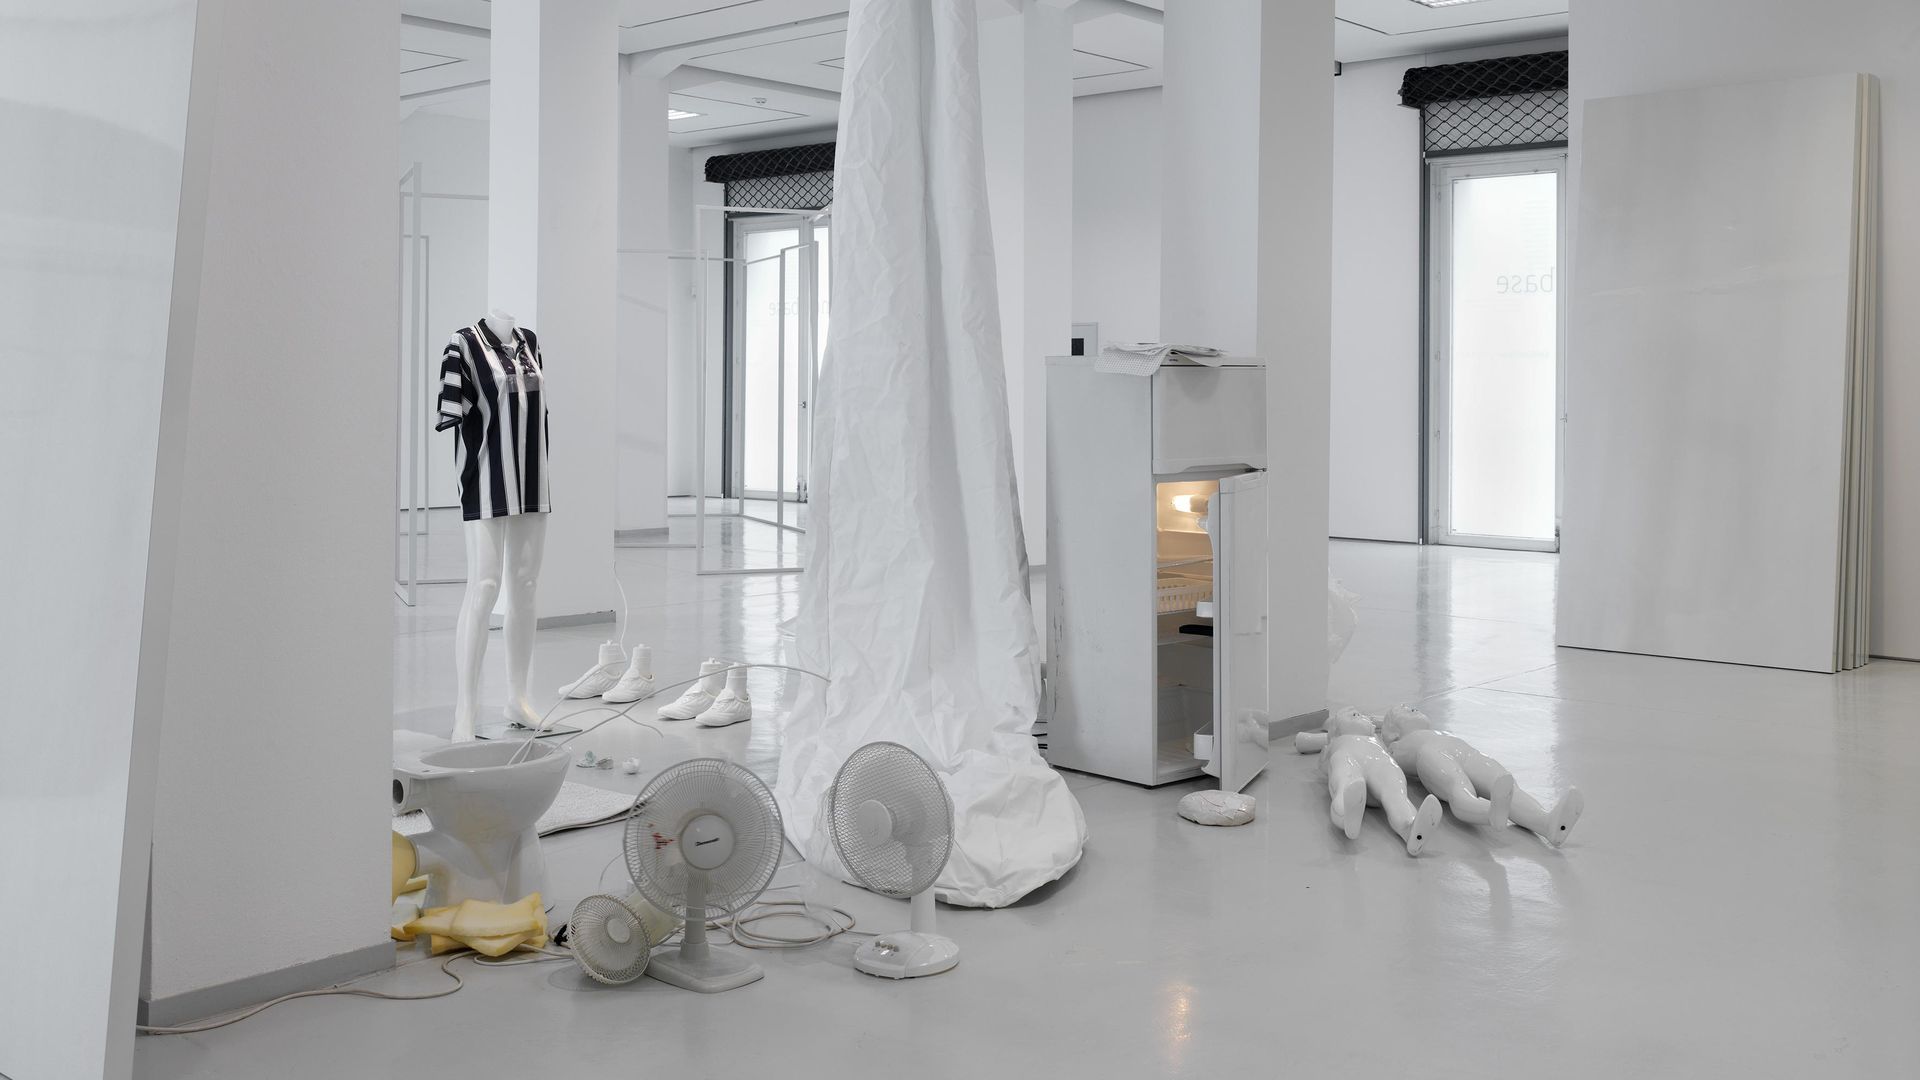 Installationsansicht Erik Steinbrecher, HALO ERIK, 2014 in KAI 10 | ARTHENA FOUNDATION / Courtesy der Künstler & Galerie Stampa / © VG Bild-Kunst Bonn, 2016